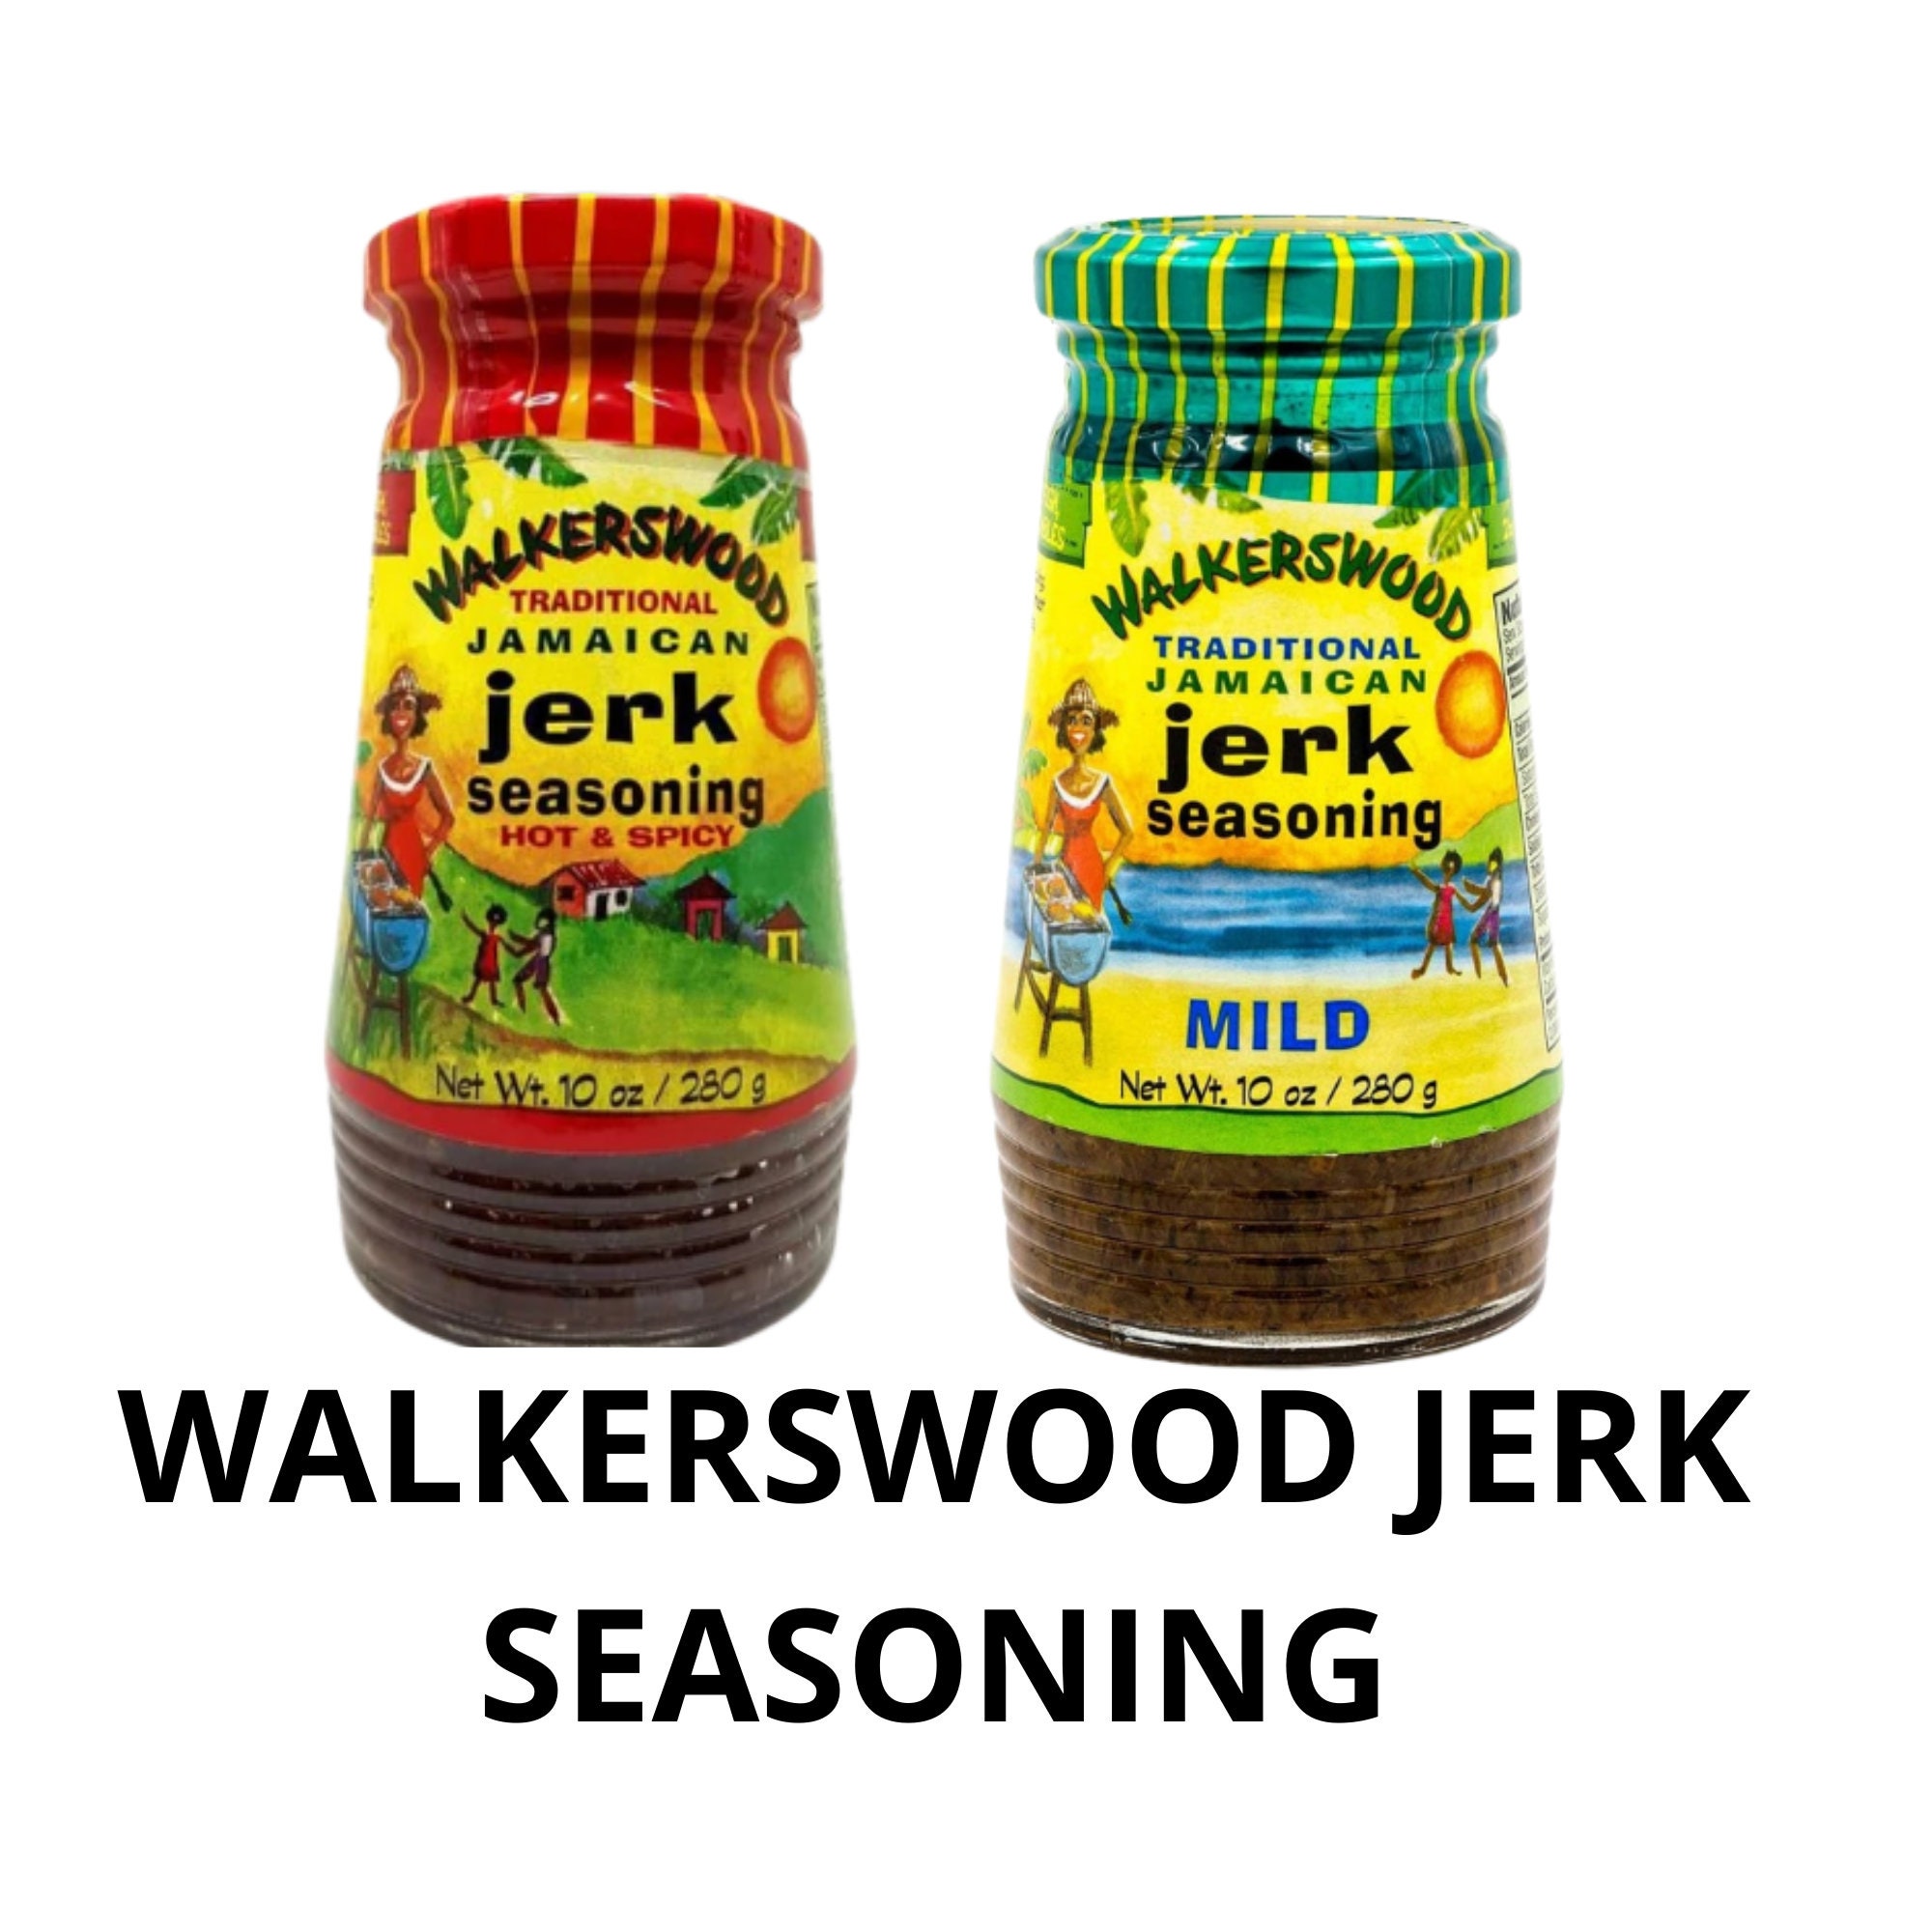 Walkerswood Jamaican Jerk Seasonings Mixed Pack - Hot & Spicy, Mild and  Jerk Marinade